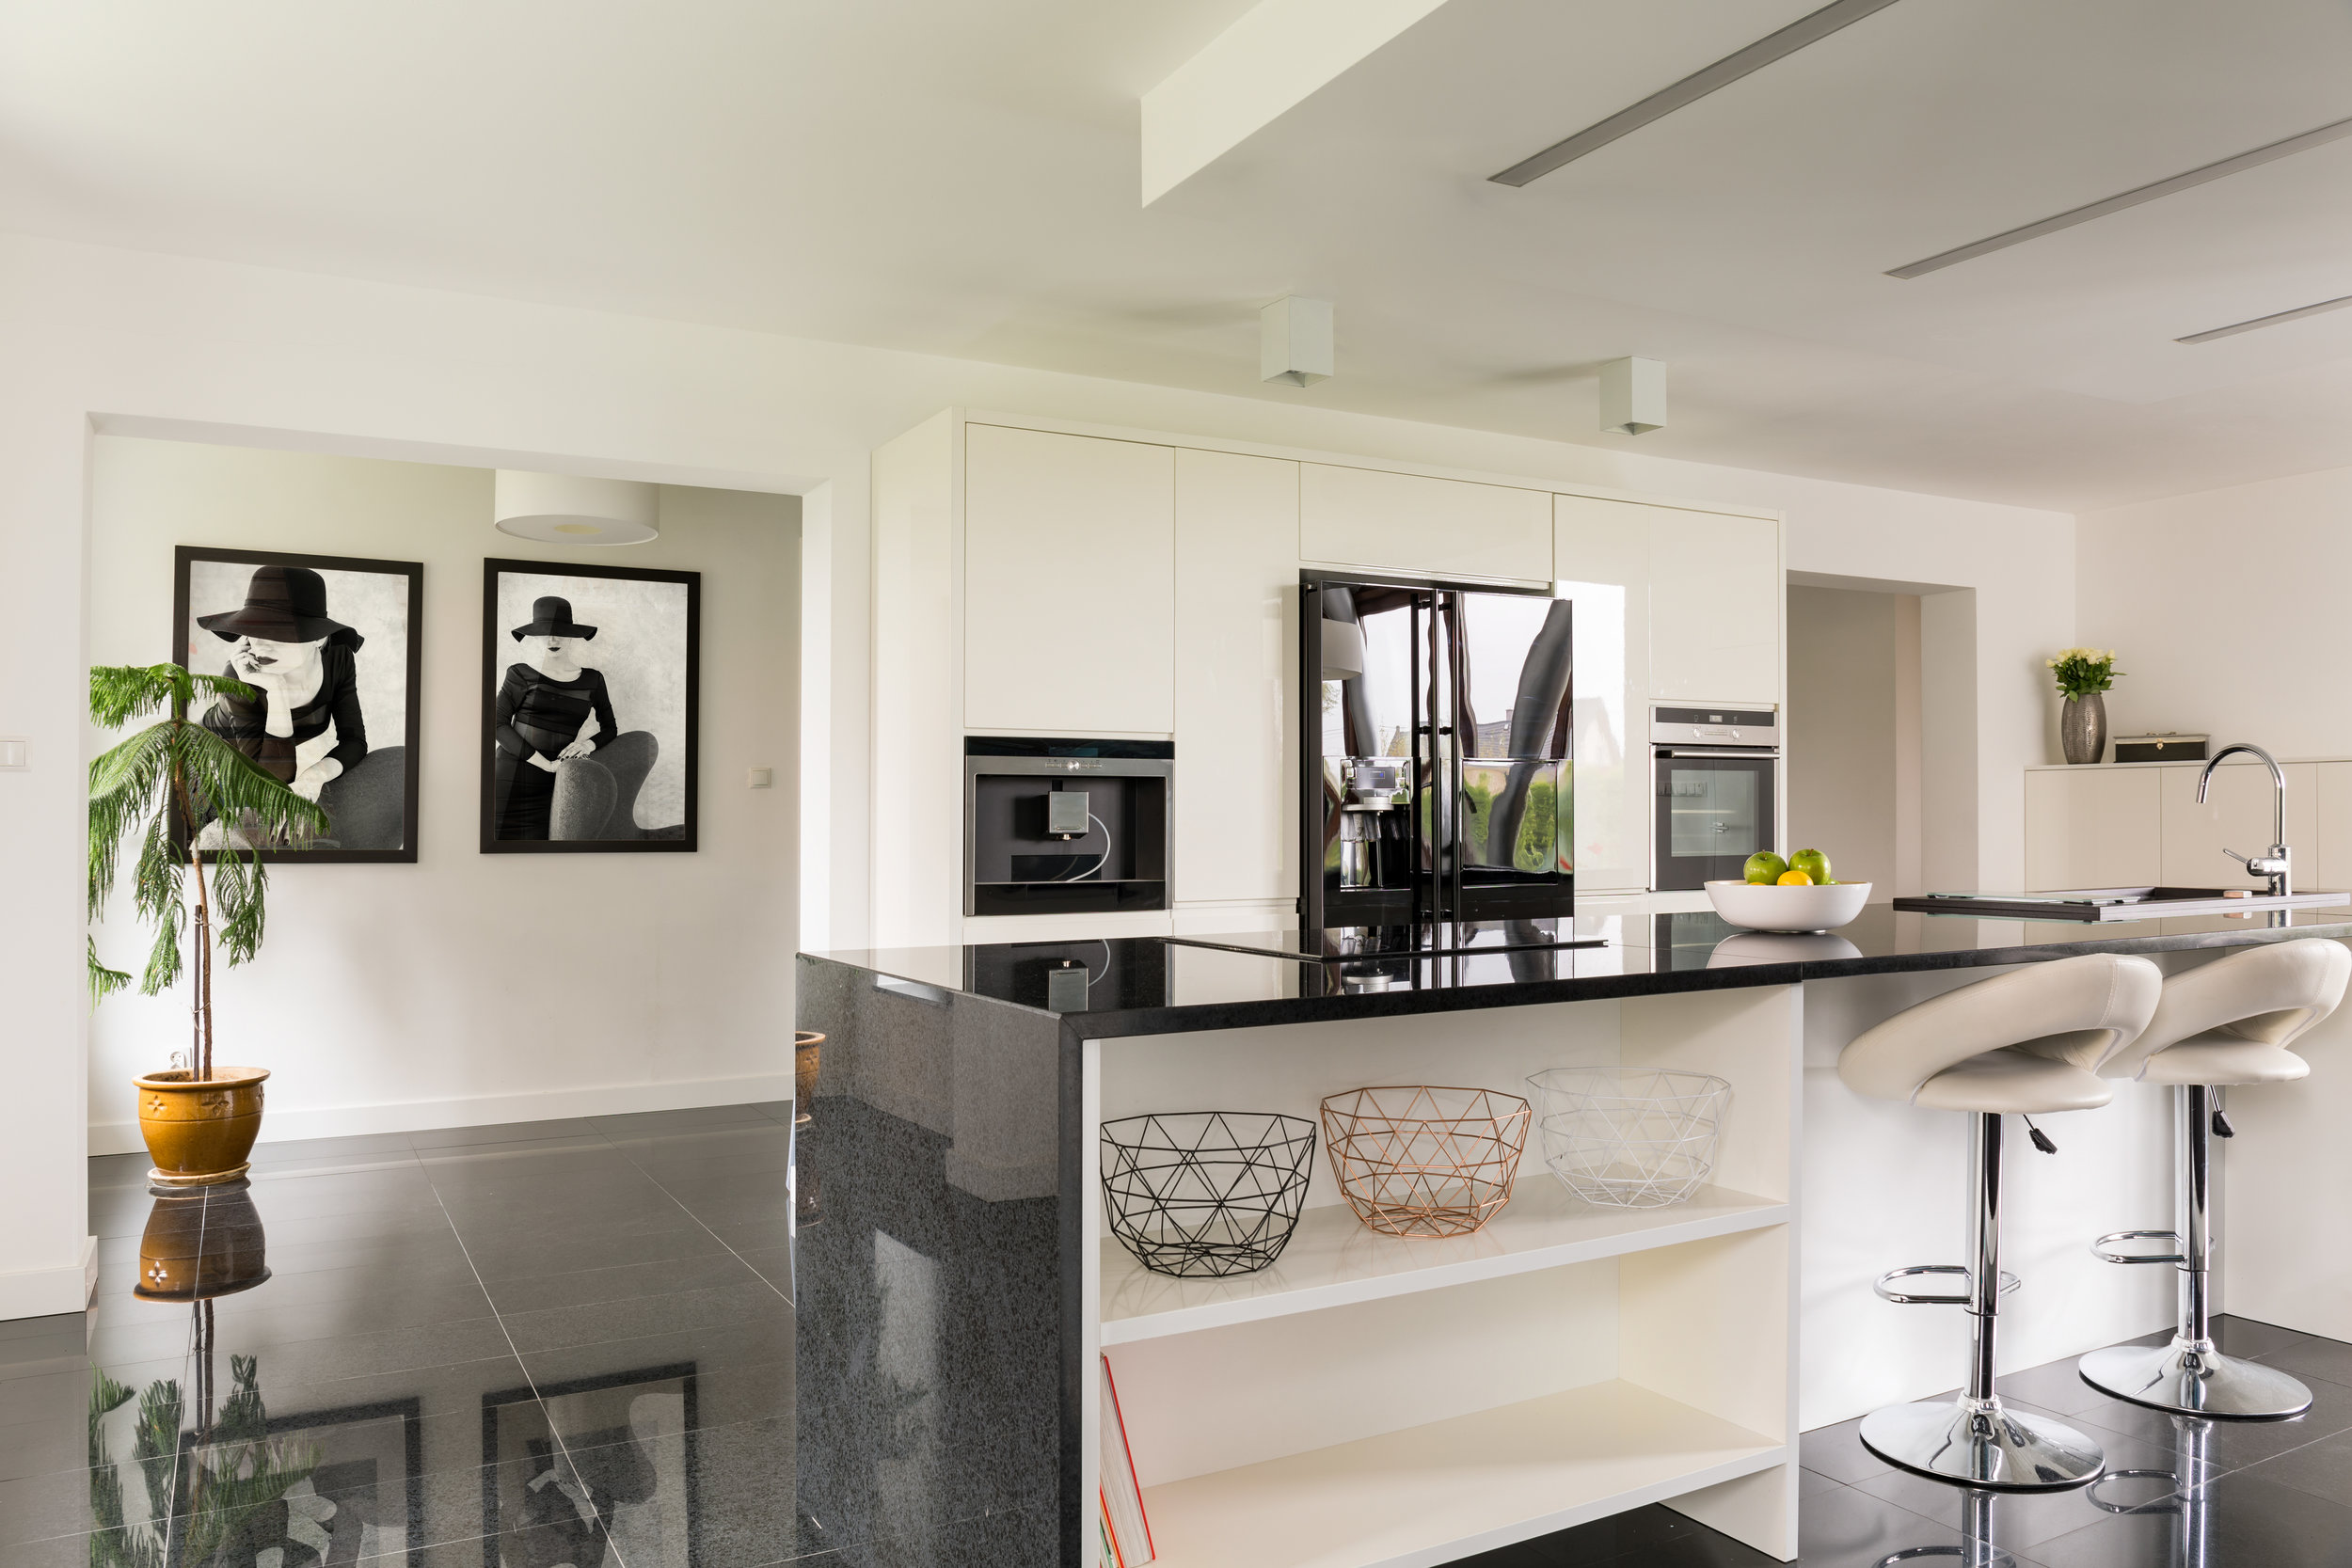 villa-interior-with-open-kitchen-PRBUUPX.jpg